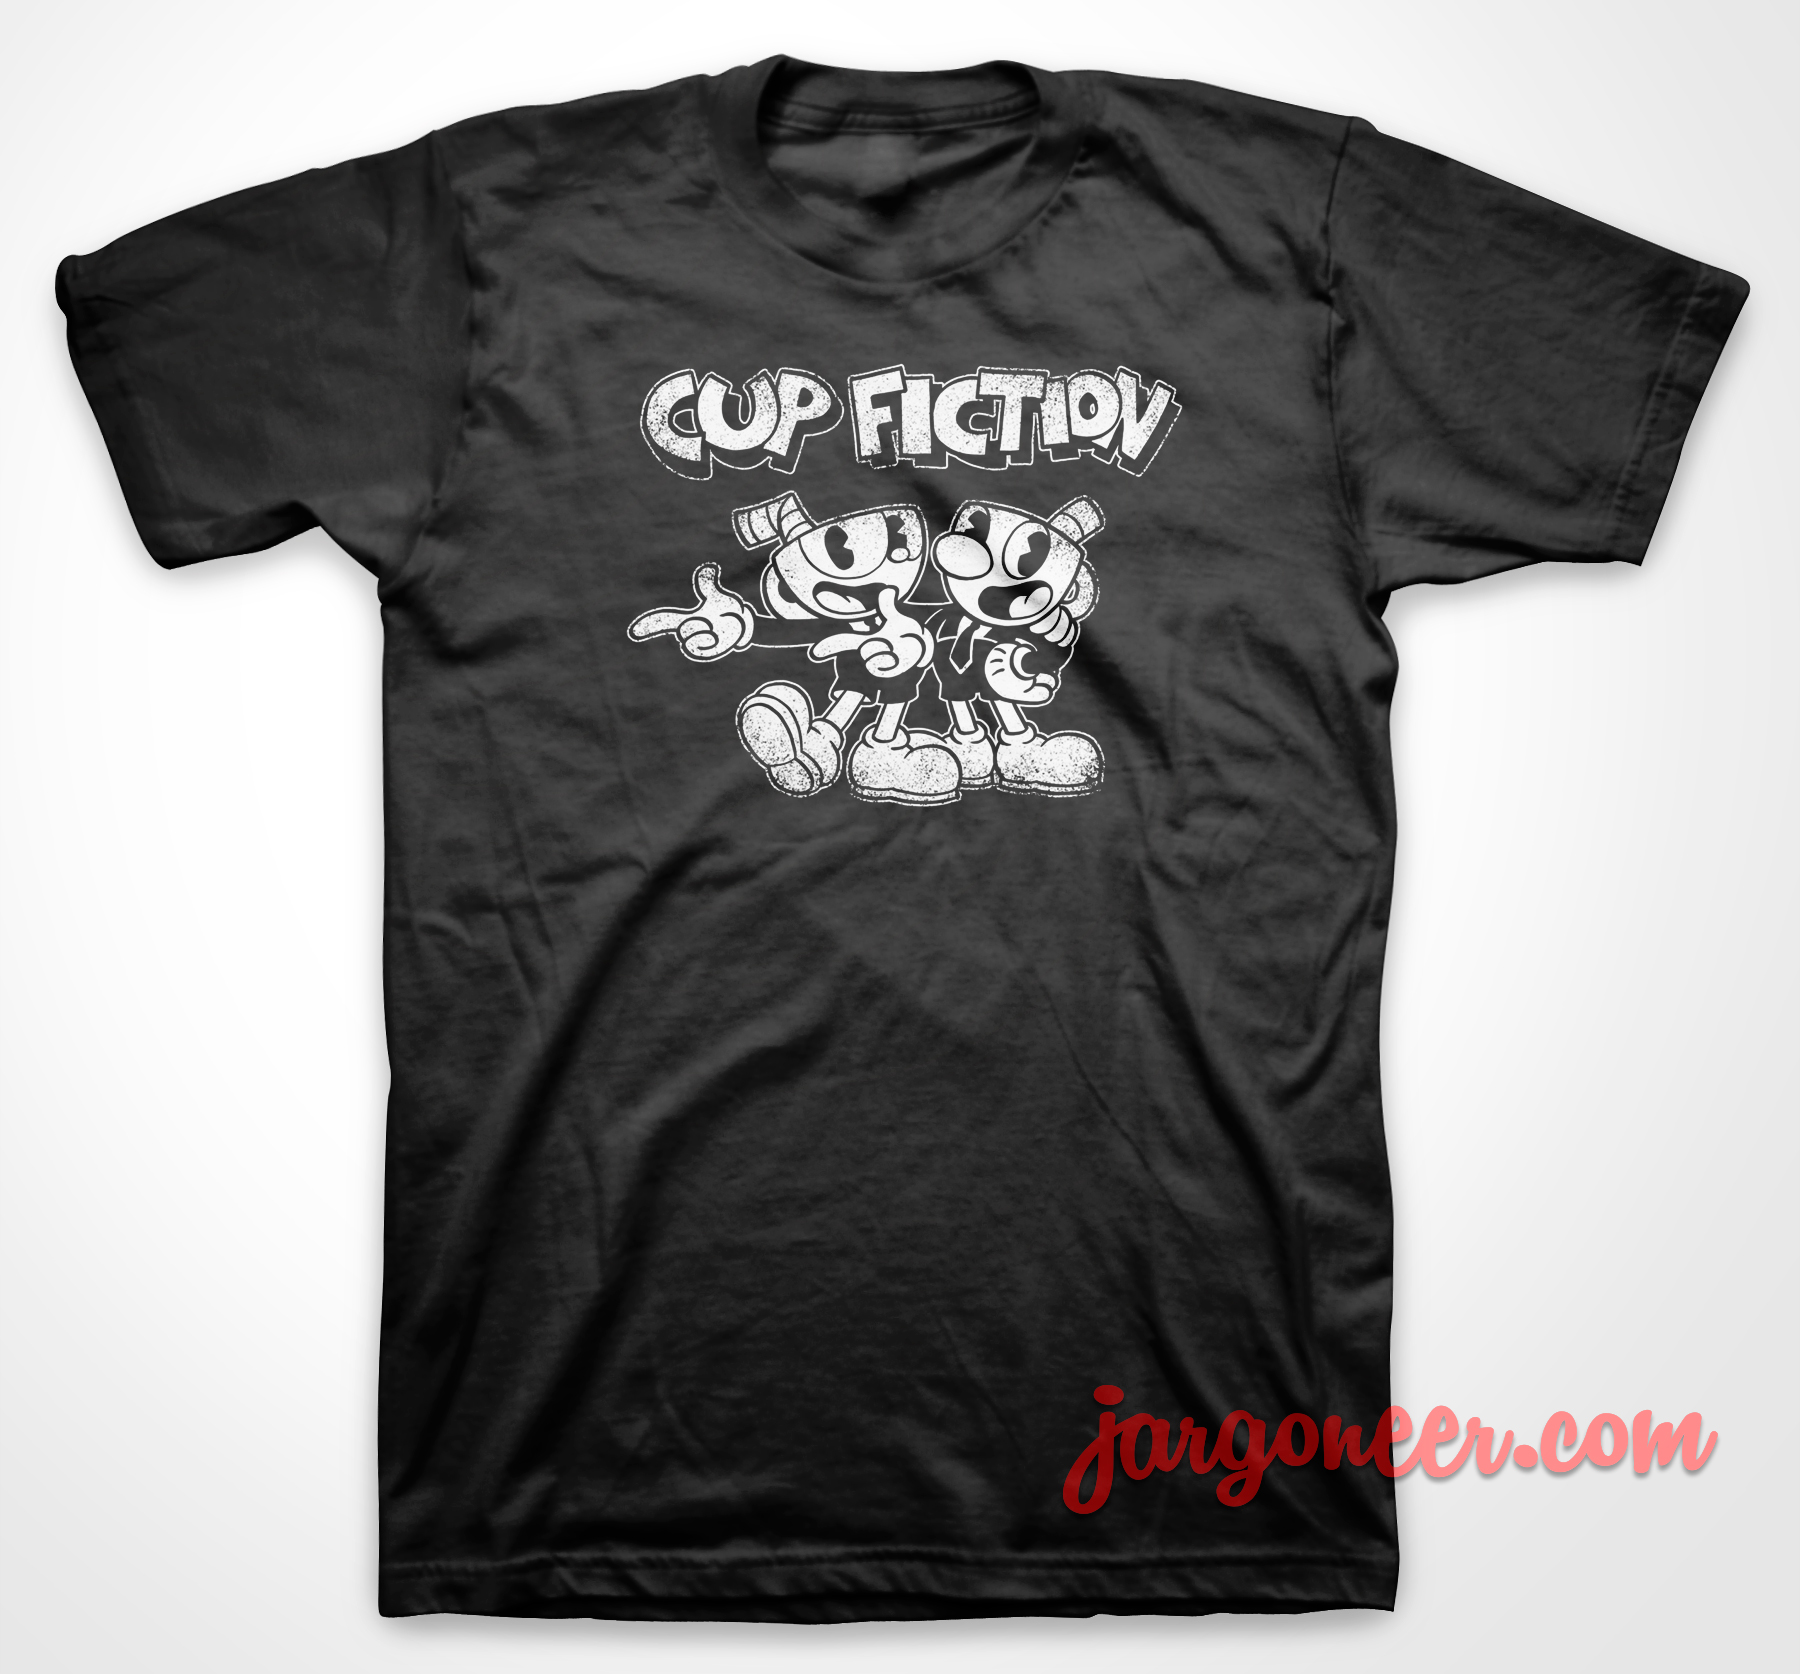 Cup Fiction - Shop Unique Graphic Cool Shirt Designs